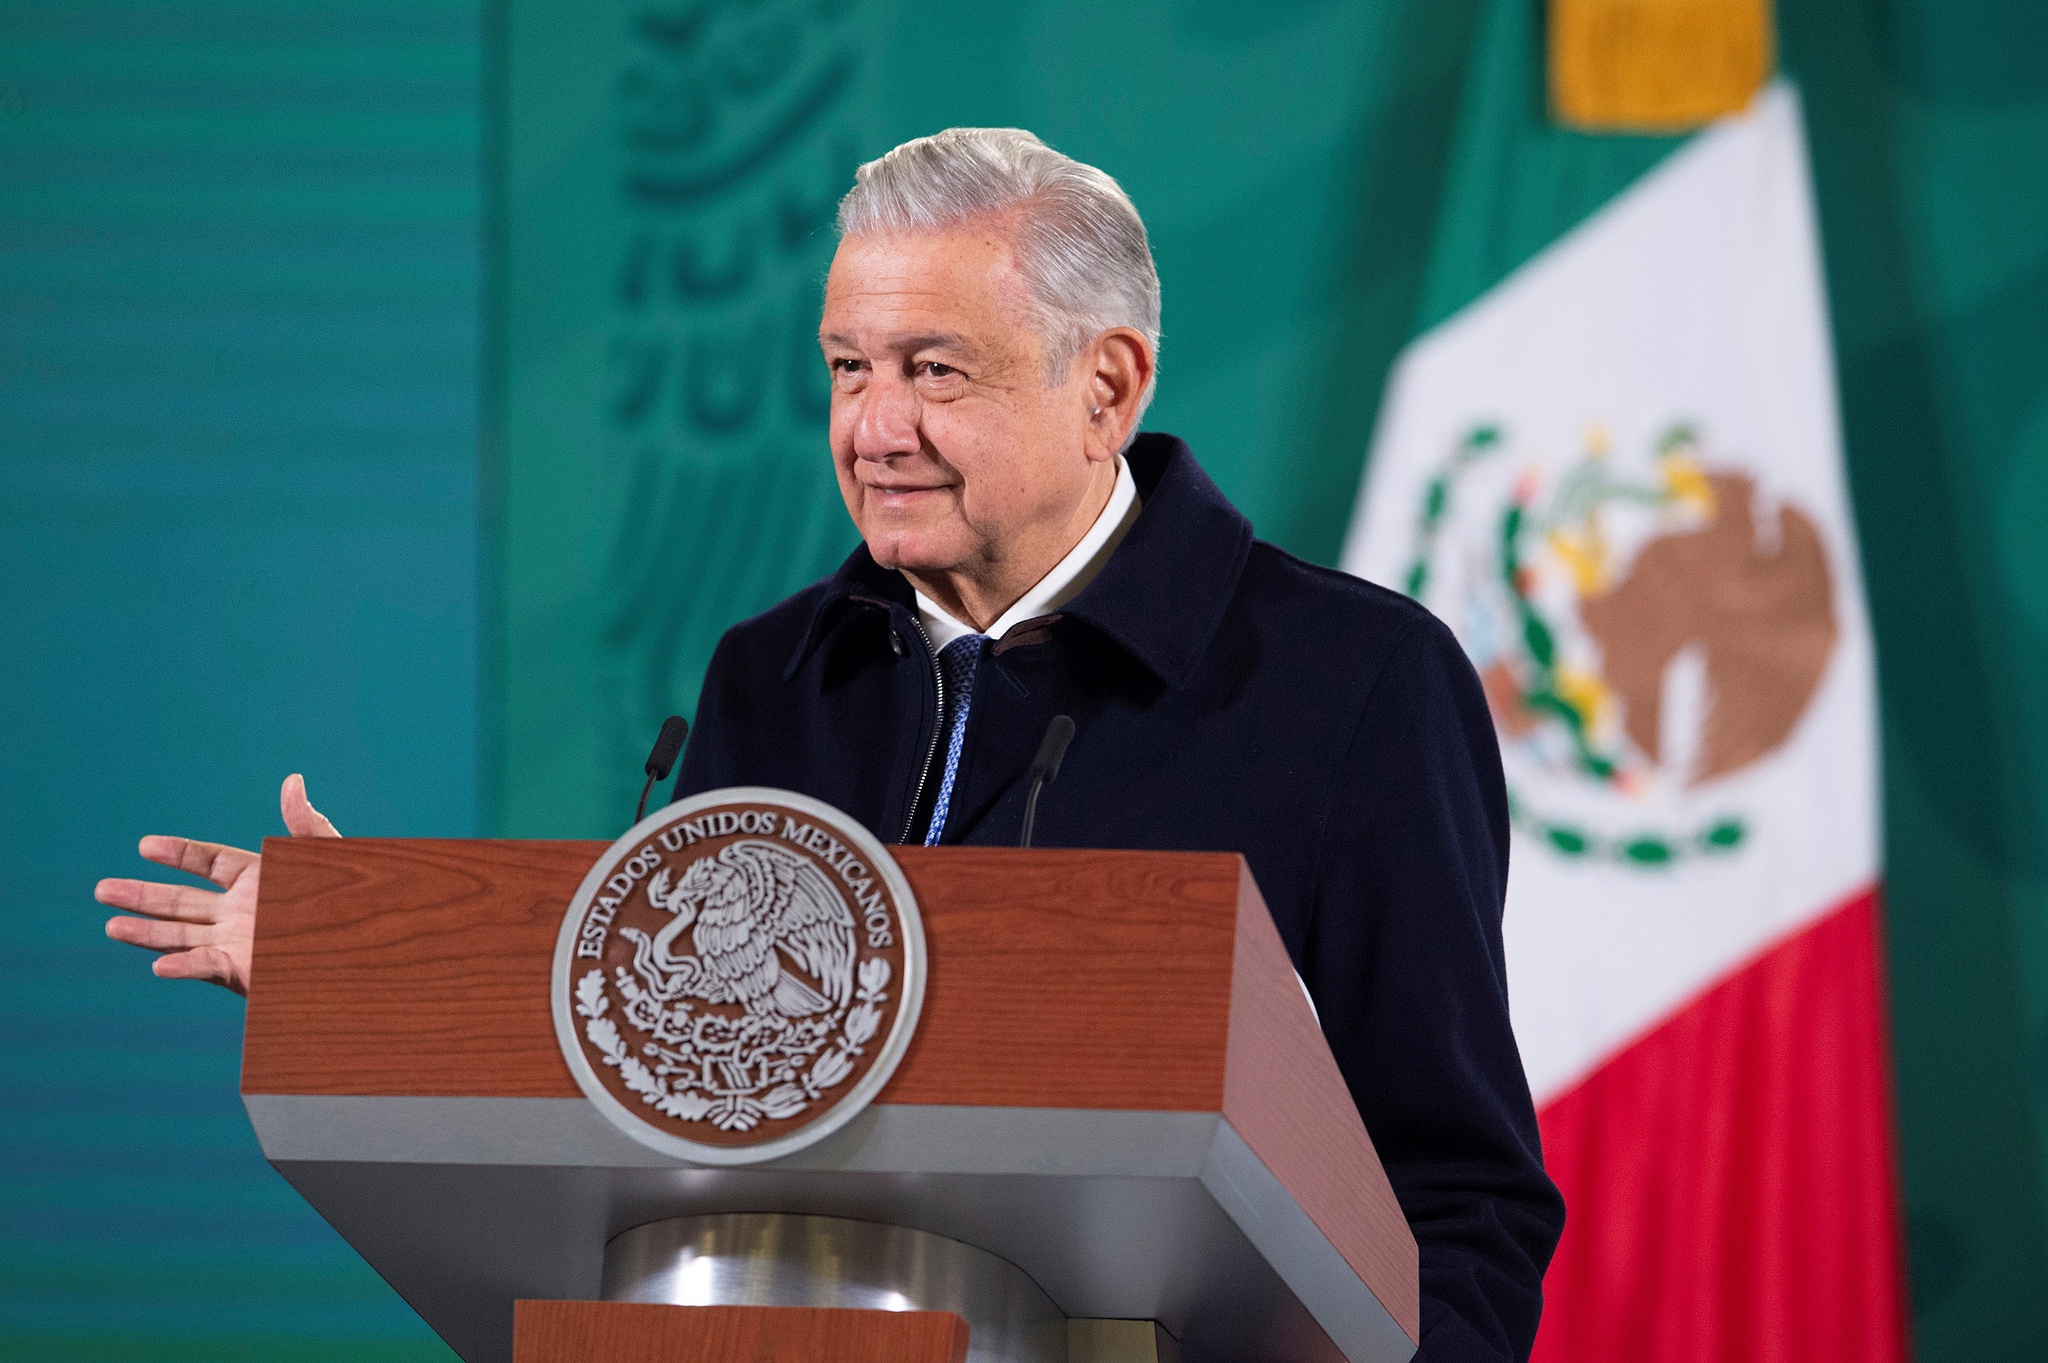 La Corte Suprema de México ordena a la comisión electoral organizar un referéndum sobre el presidente que ha convocado |  México